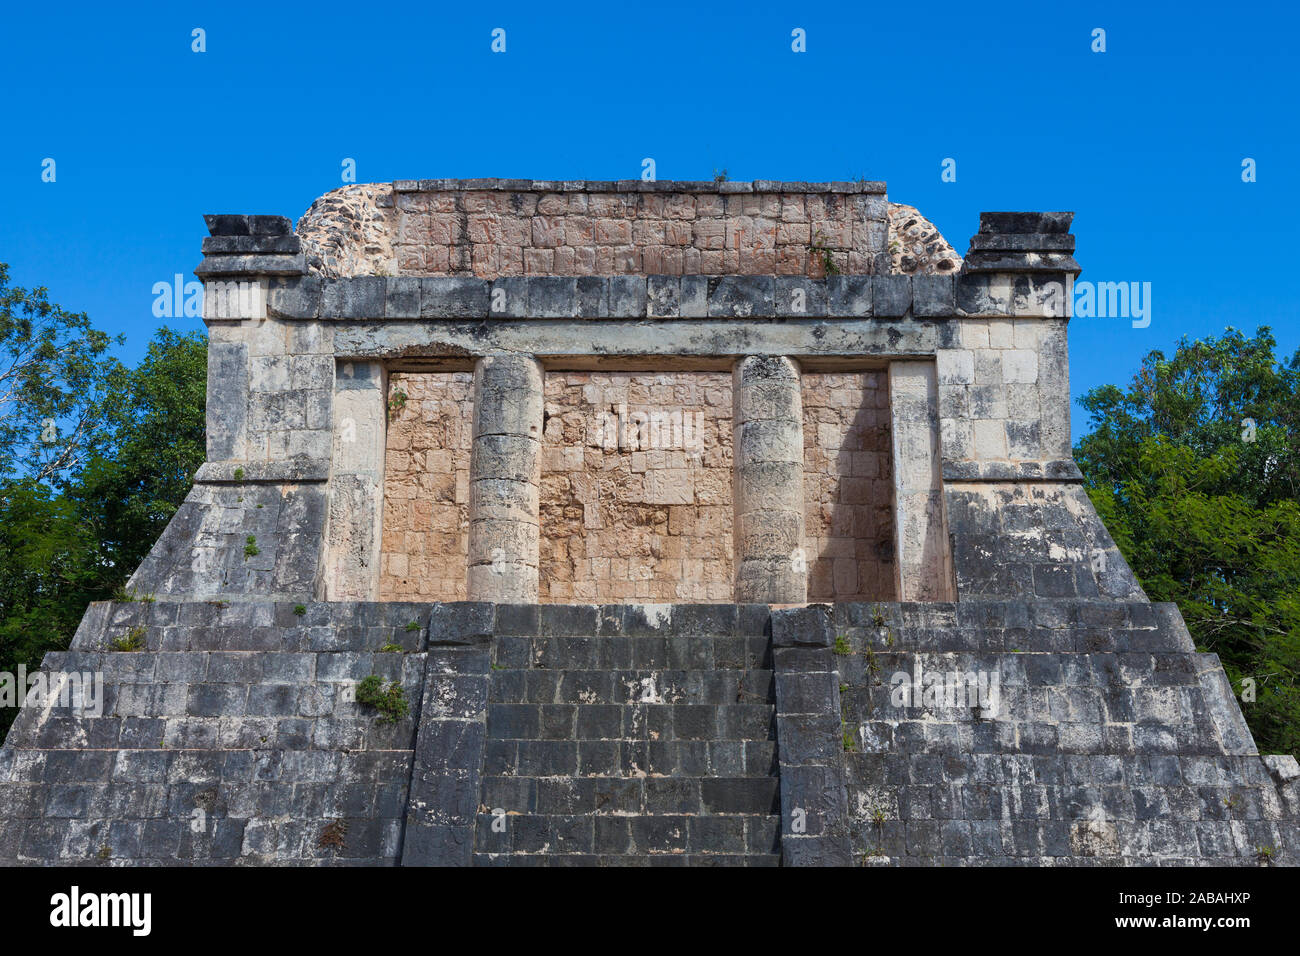 Tempel des bärtigen Mann mit Blick auf das Pelota Ball Court von Chichen Itza in Mexiko Stockfoto